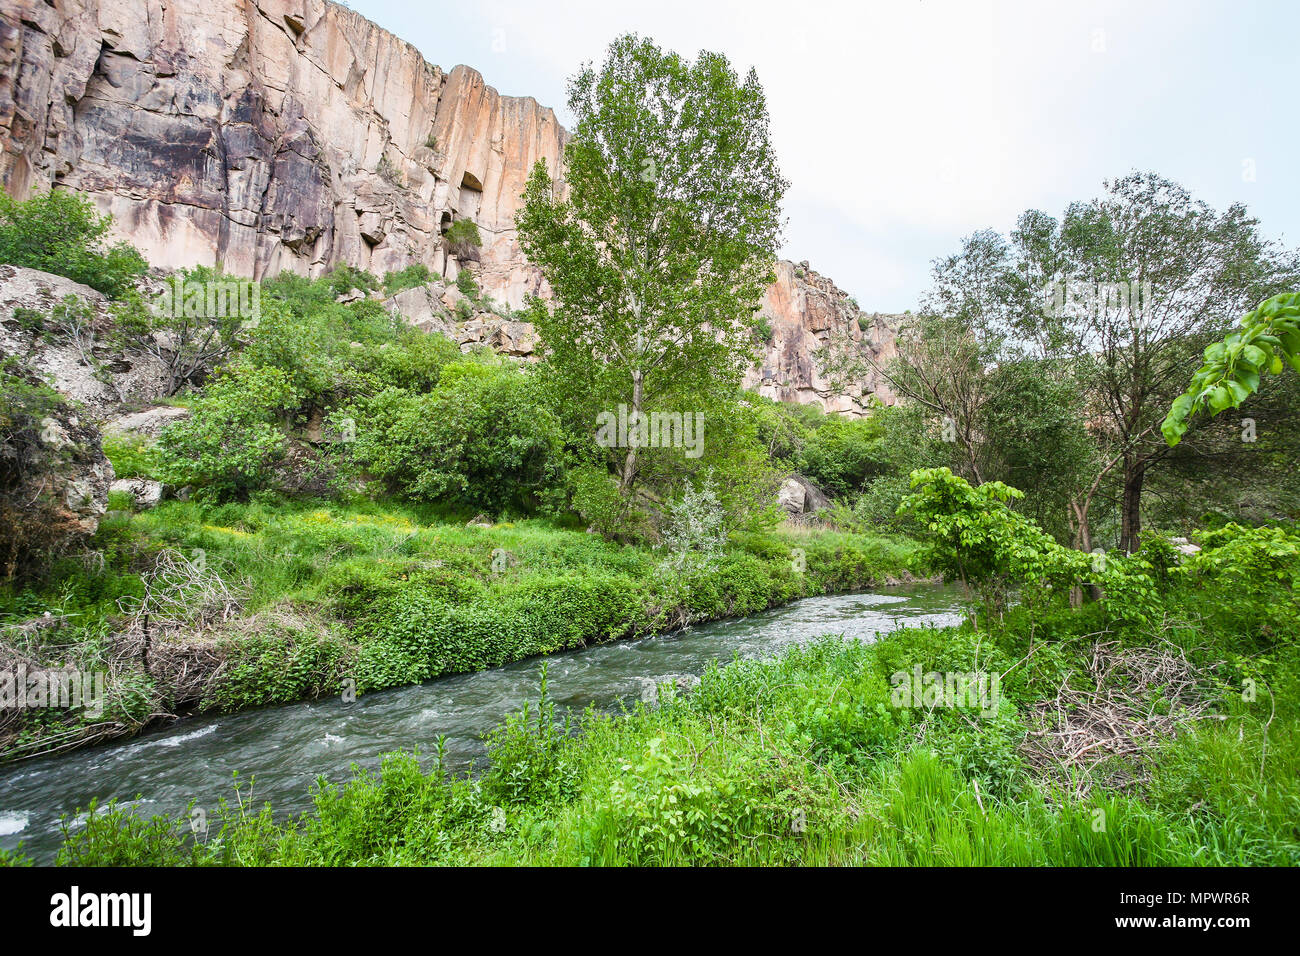 Travel to Turkey - Melendiz river in Ihlara Valley of Aksaray Province in Cappadocia in spring Stock Photo